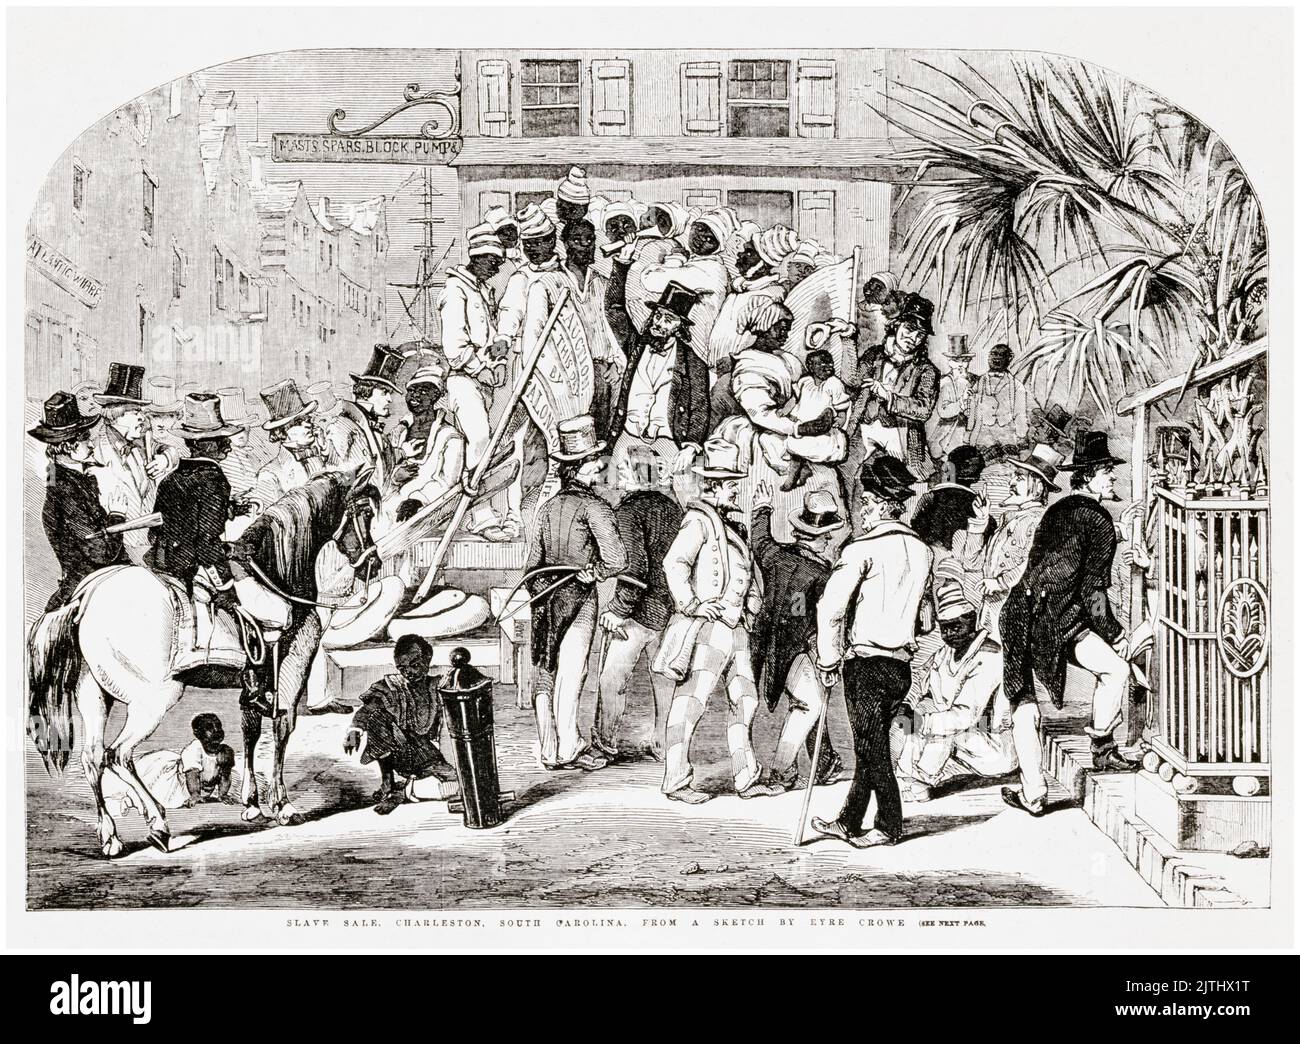 Sklavenverkauf, Charleston, South Carolina, Stich von Eyre Crowe, 1856 Stockfoto